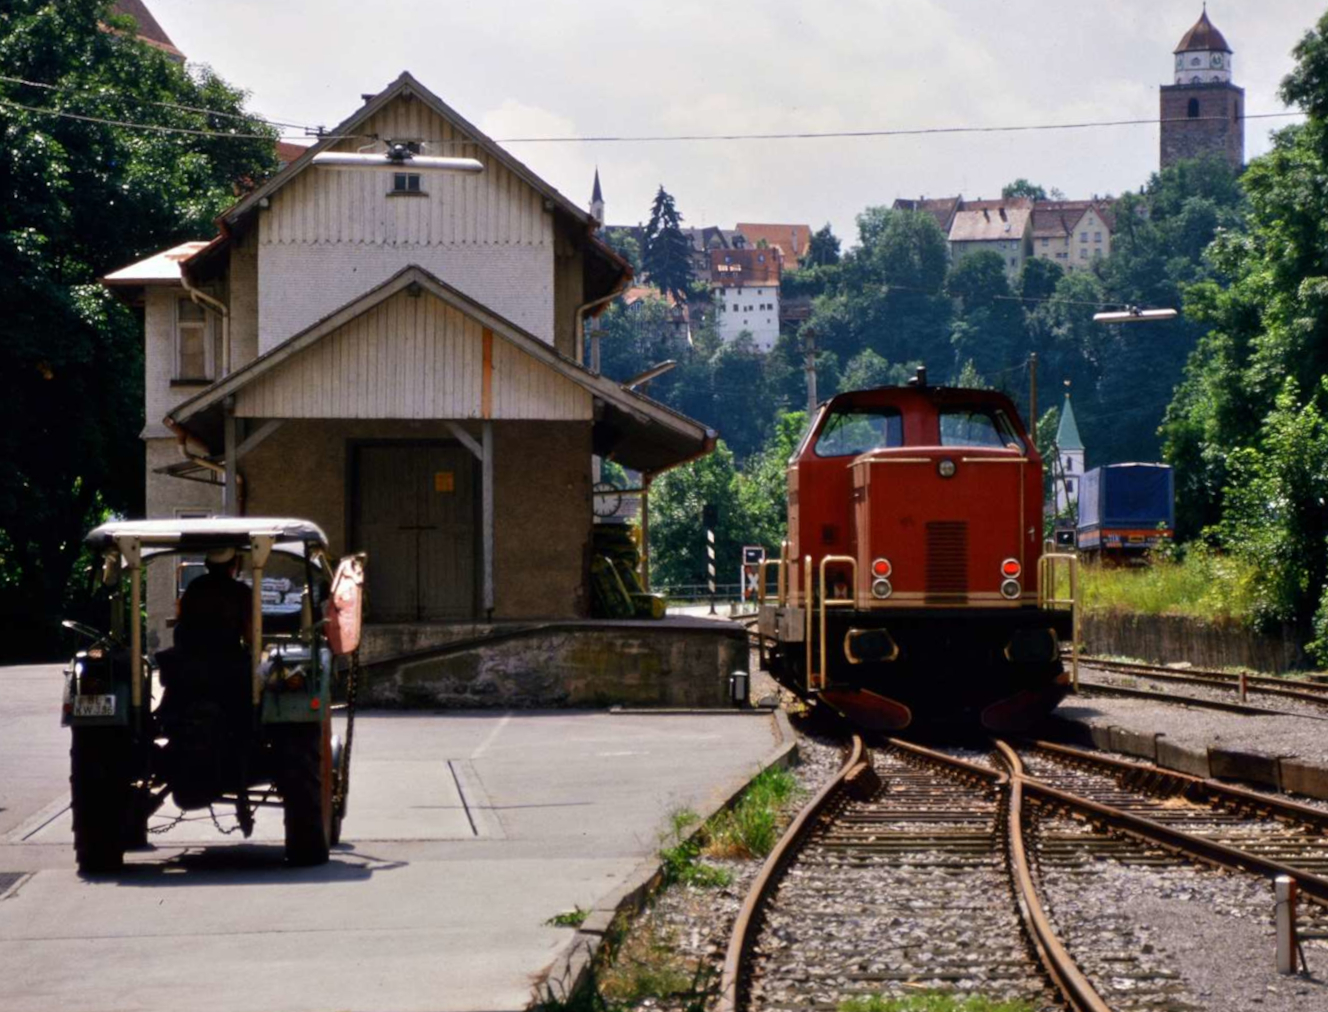 Zu dieser Zeit wurde auf der Hohenzollerischen Landesbahn in Haigerloch nur für Firmen gefahren.
Datum: 29.10.1984